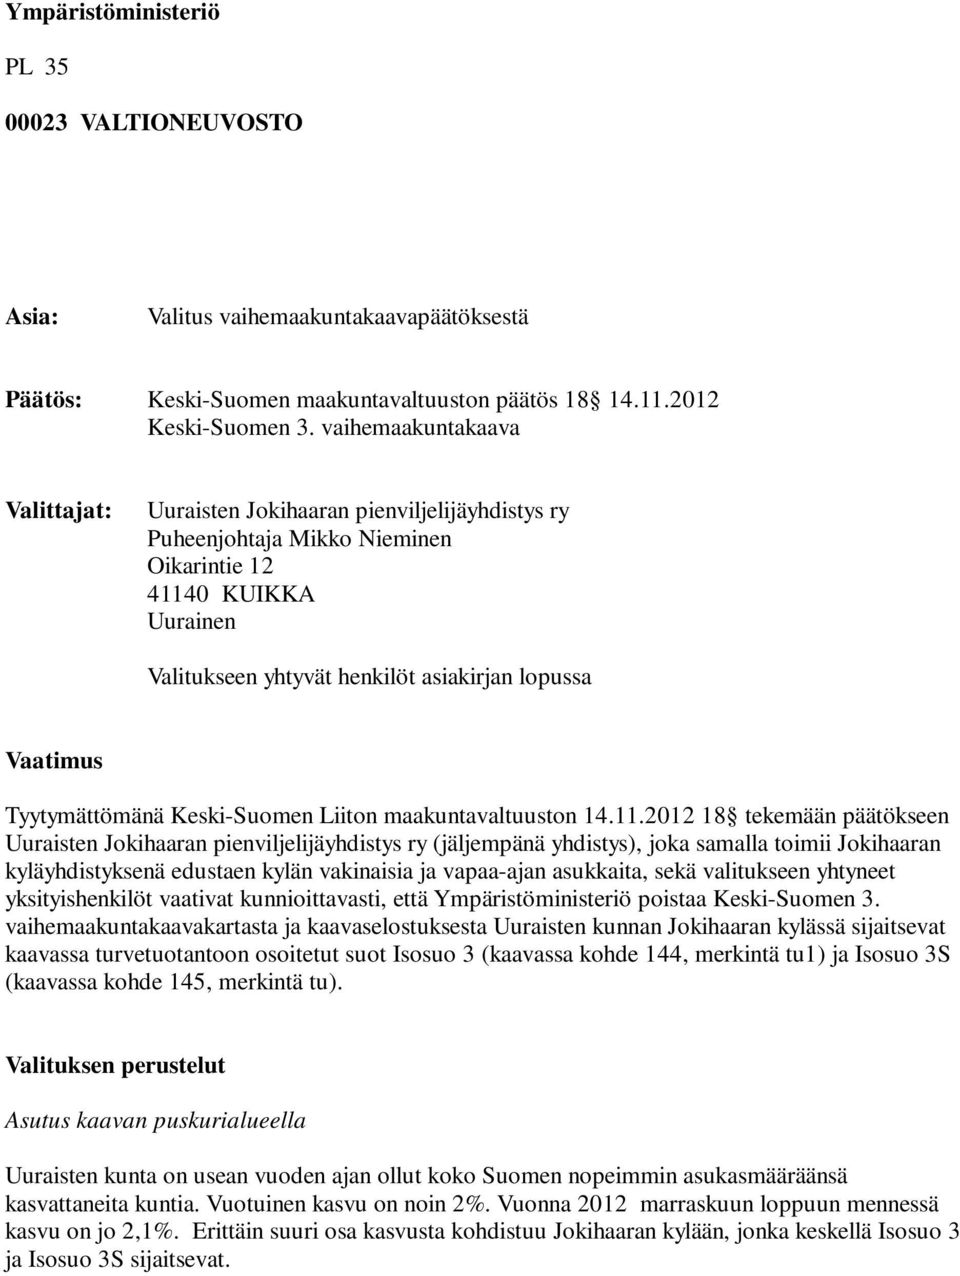 Tyytymättömänä Keski-Suomen Liiton maakuntavaltuuston 14.11.